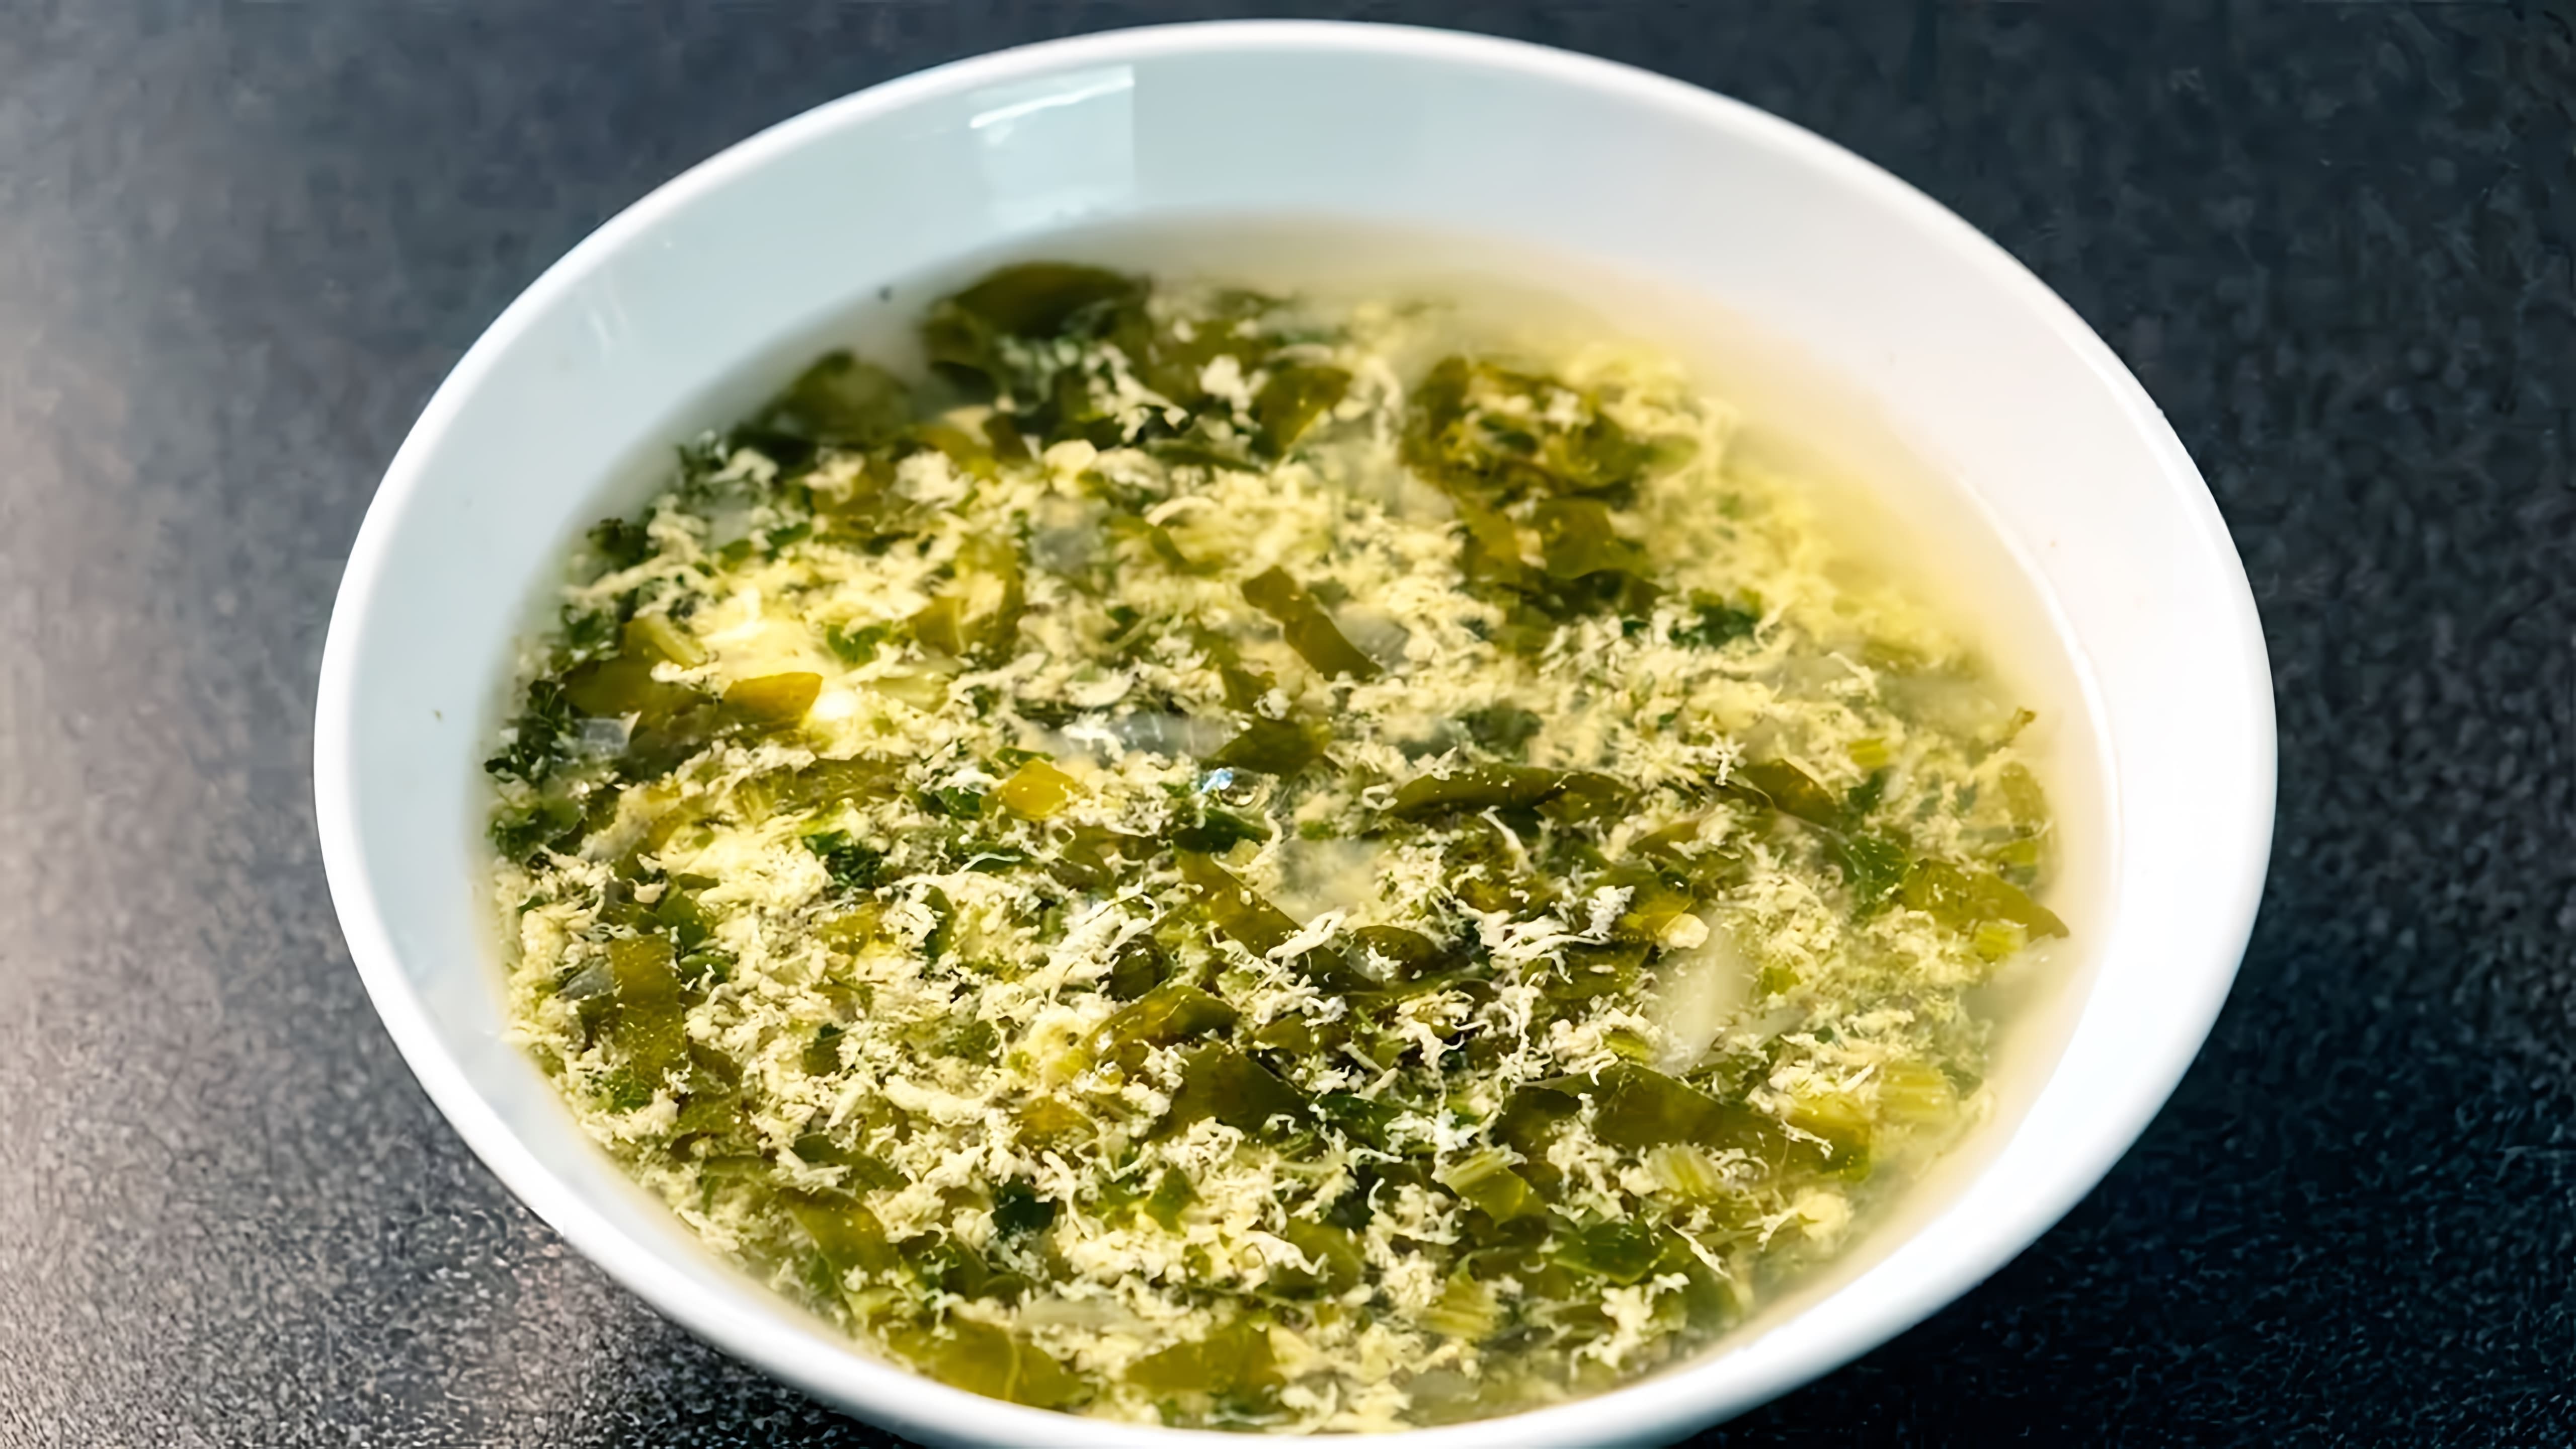 В этом видео демонстрируется рецепт приготовления щавелевого супа